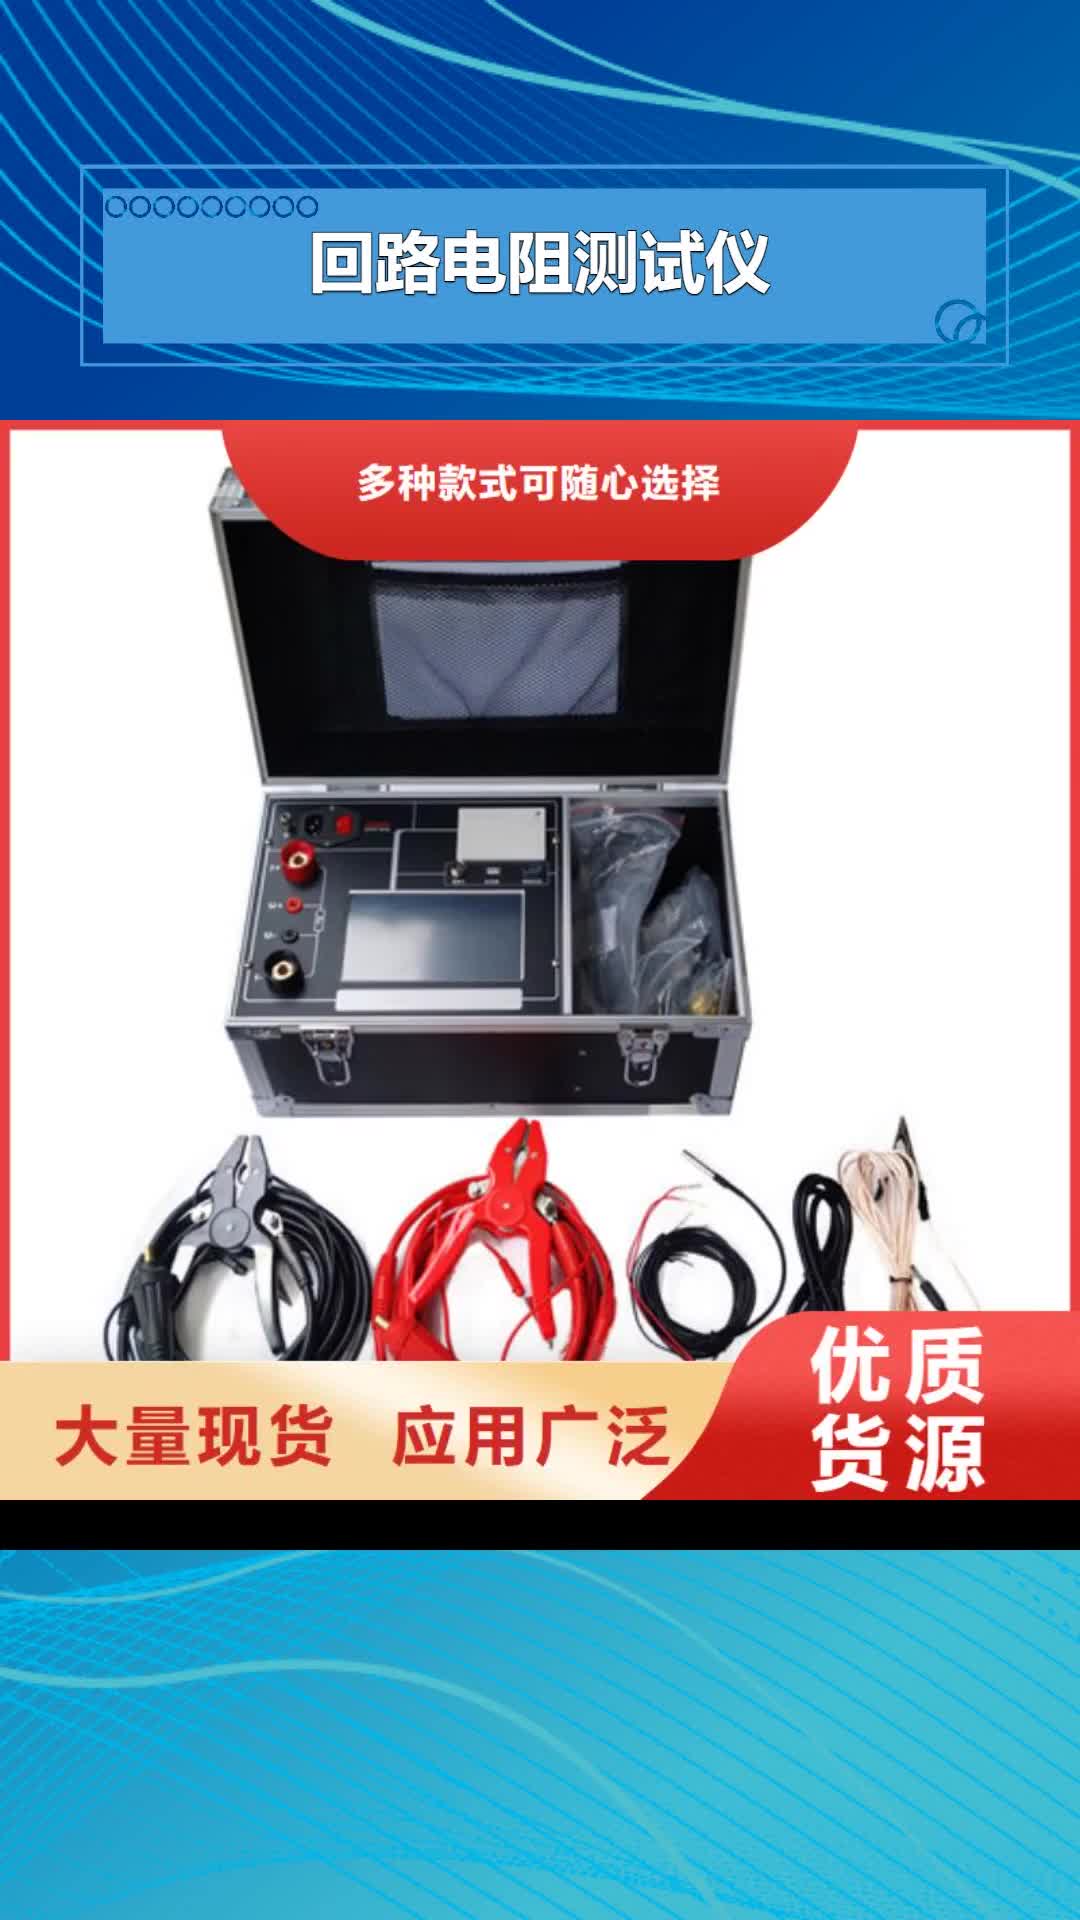 楚雄【回路电阻测试仪】,蓄电池测试仪多种规格供您选择